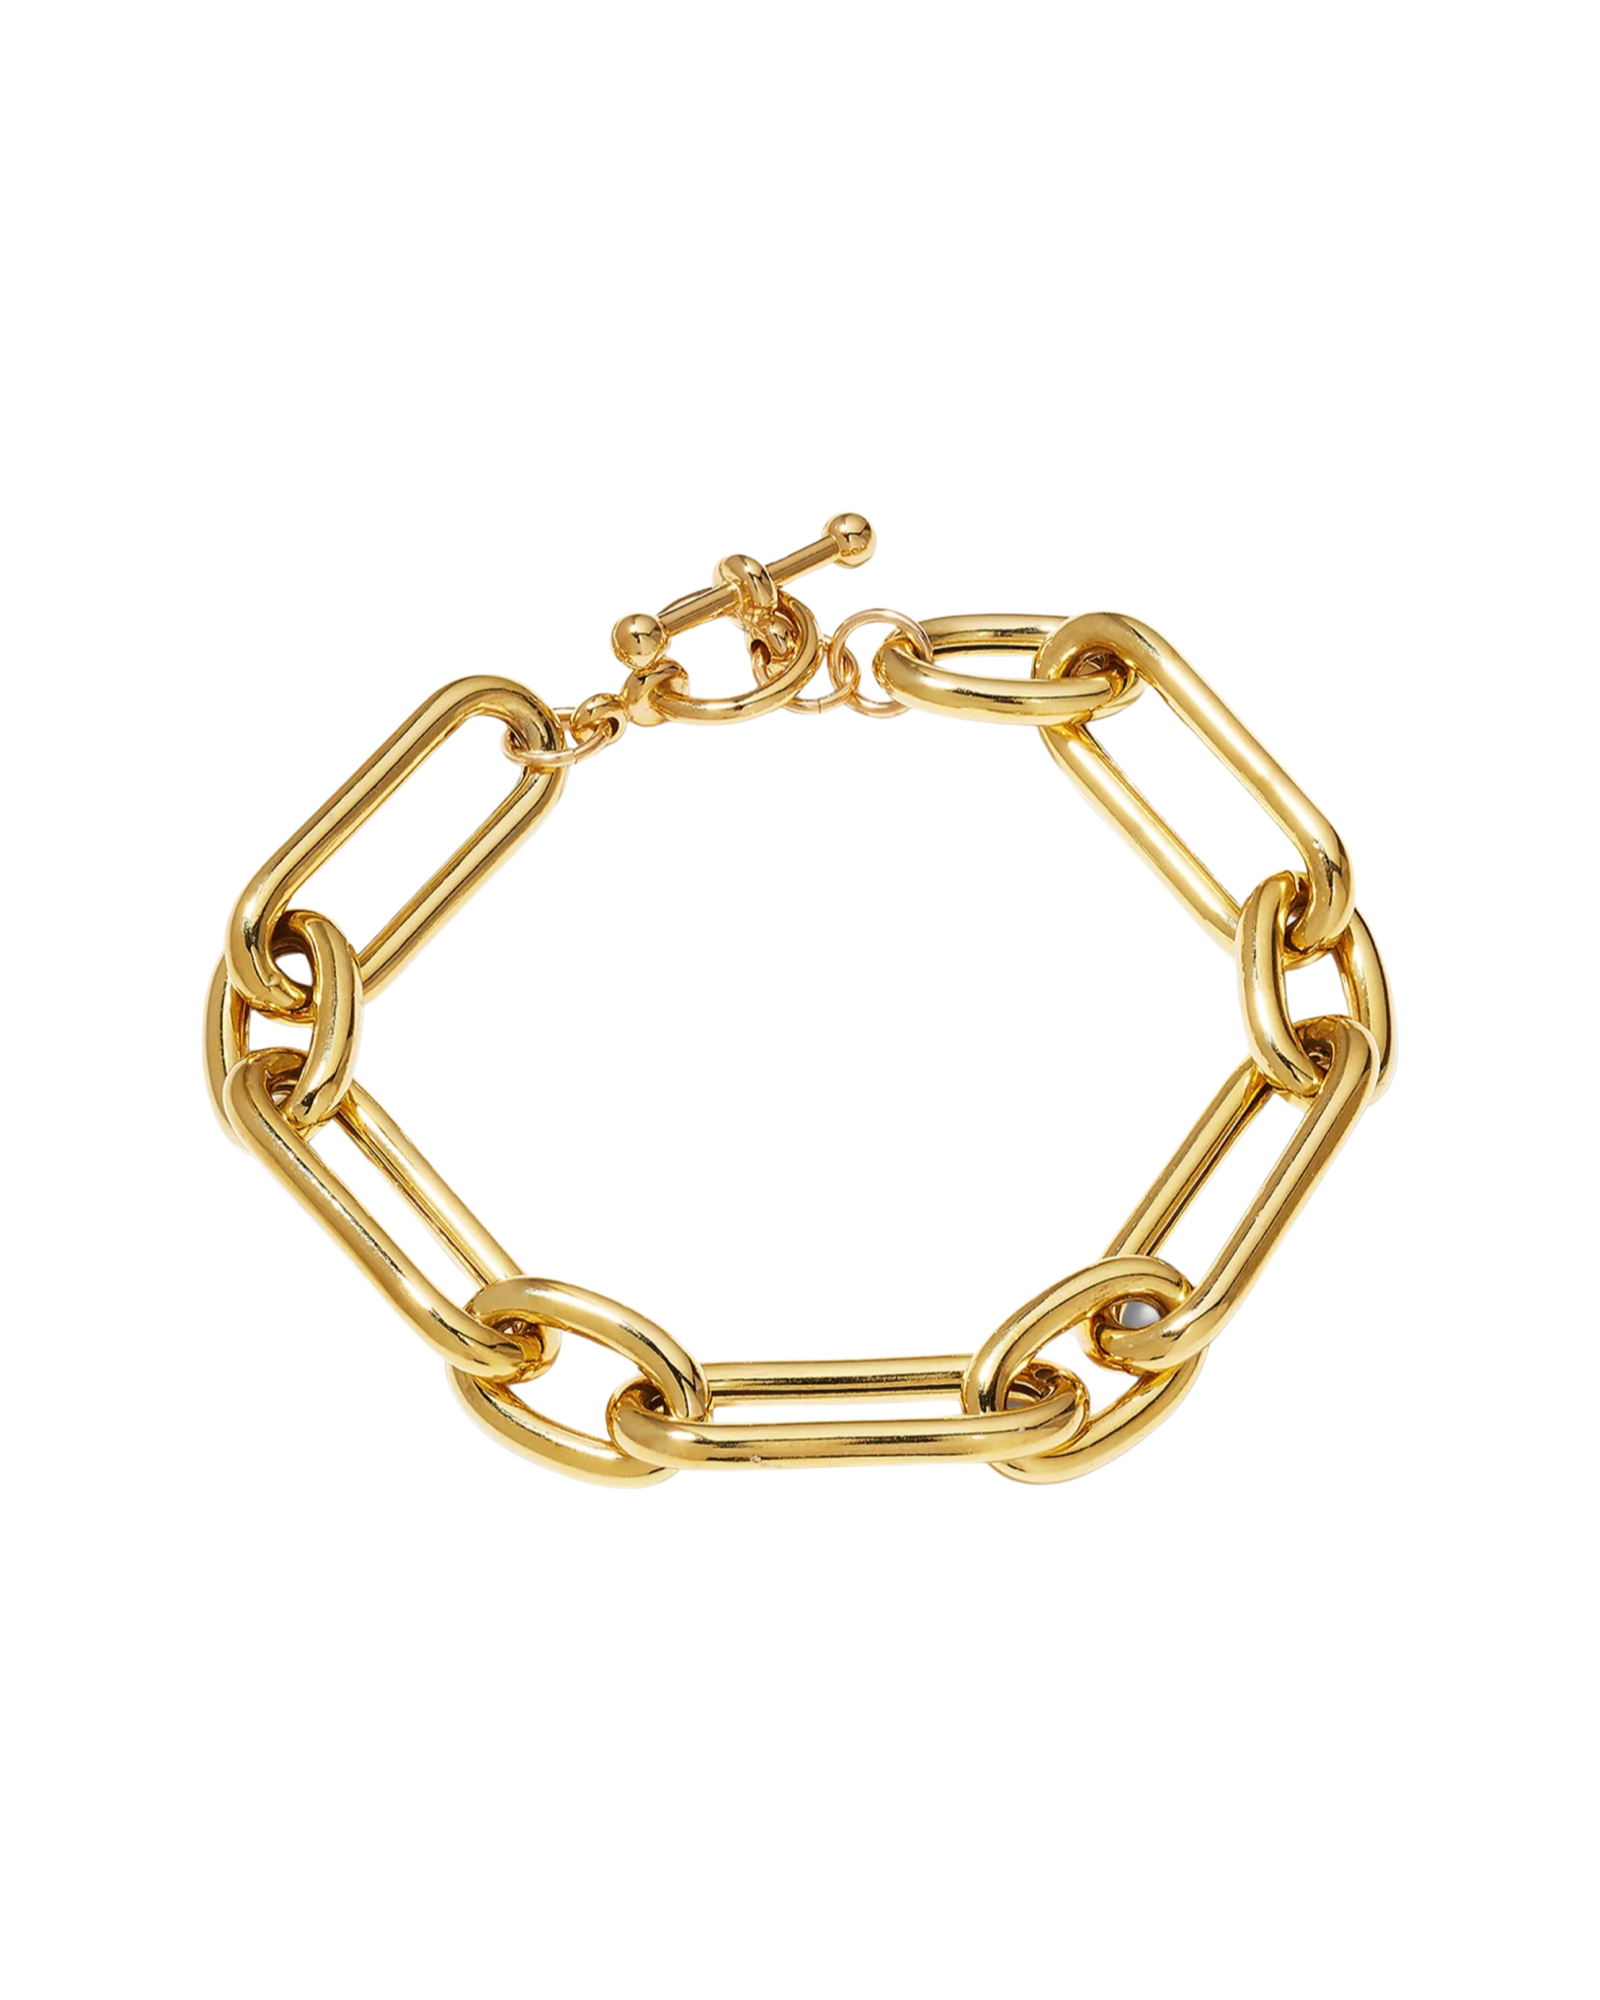 Lightweight Italian Gold Vermeil Bracelet